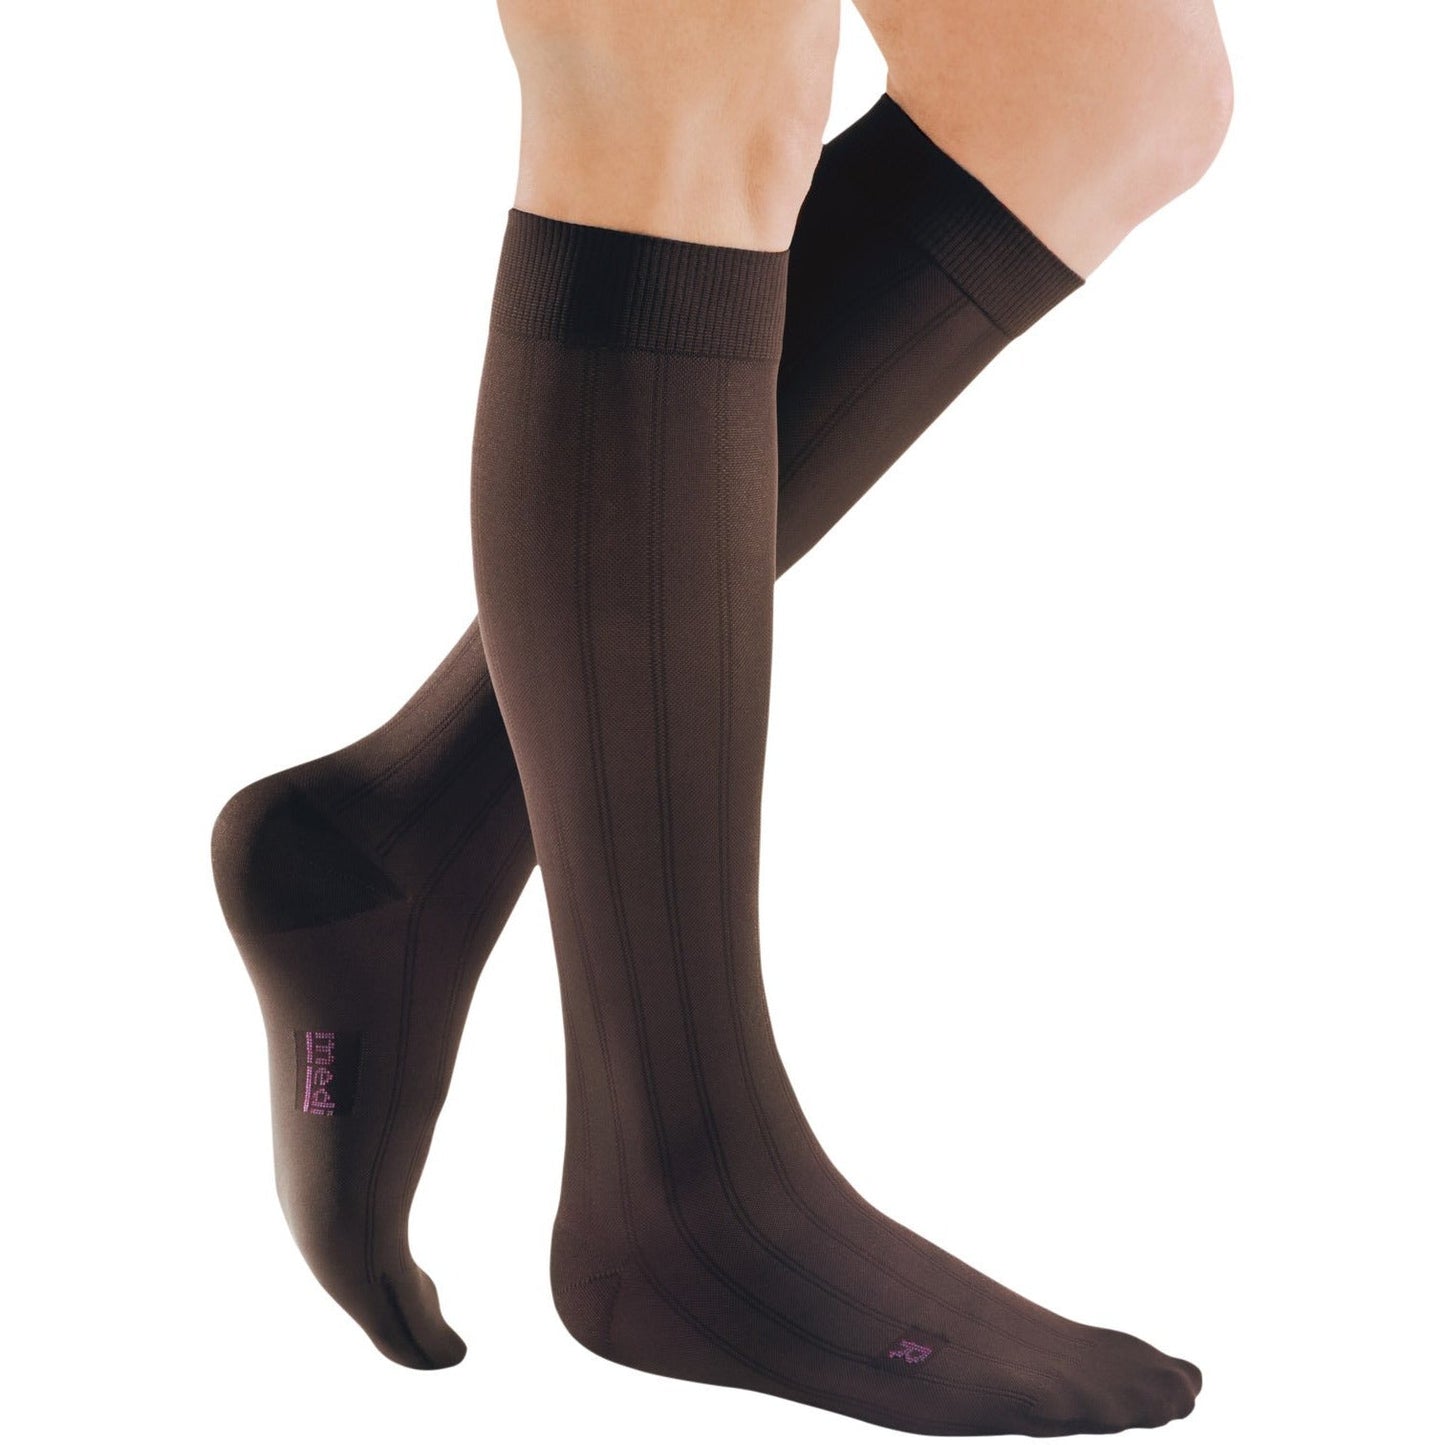 Mediven for Men Classic Knee High 30-40 mmHg [OVERSTOCK]